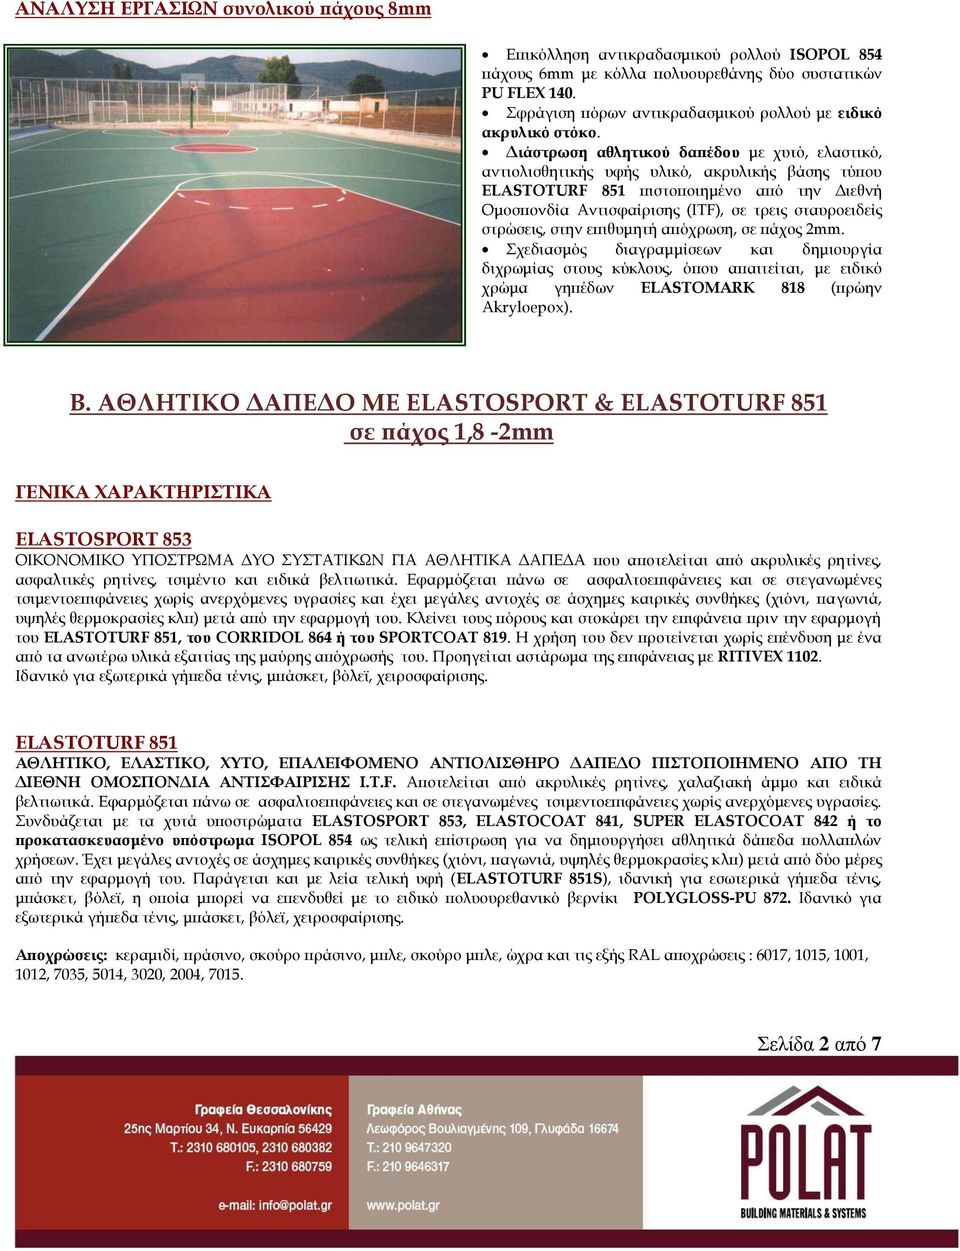 Διάστρωση αθλητικού δαπέδου με χυτό, ελαστικό, αντιολισθητικής υφής υλικό, ακρυλικής βάσης τύπου ELASTOTURF 851 πιστοποιημένο από την Διεθνή Ομοσπονδία Αντισφαίρισης (ITF), σε τρεις σταυροειδείς